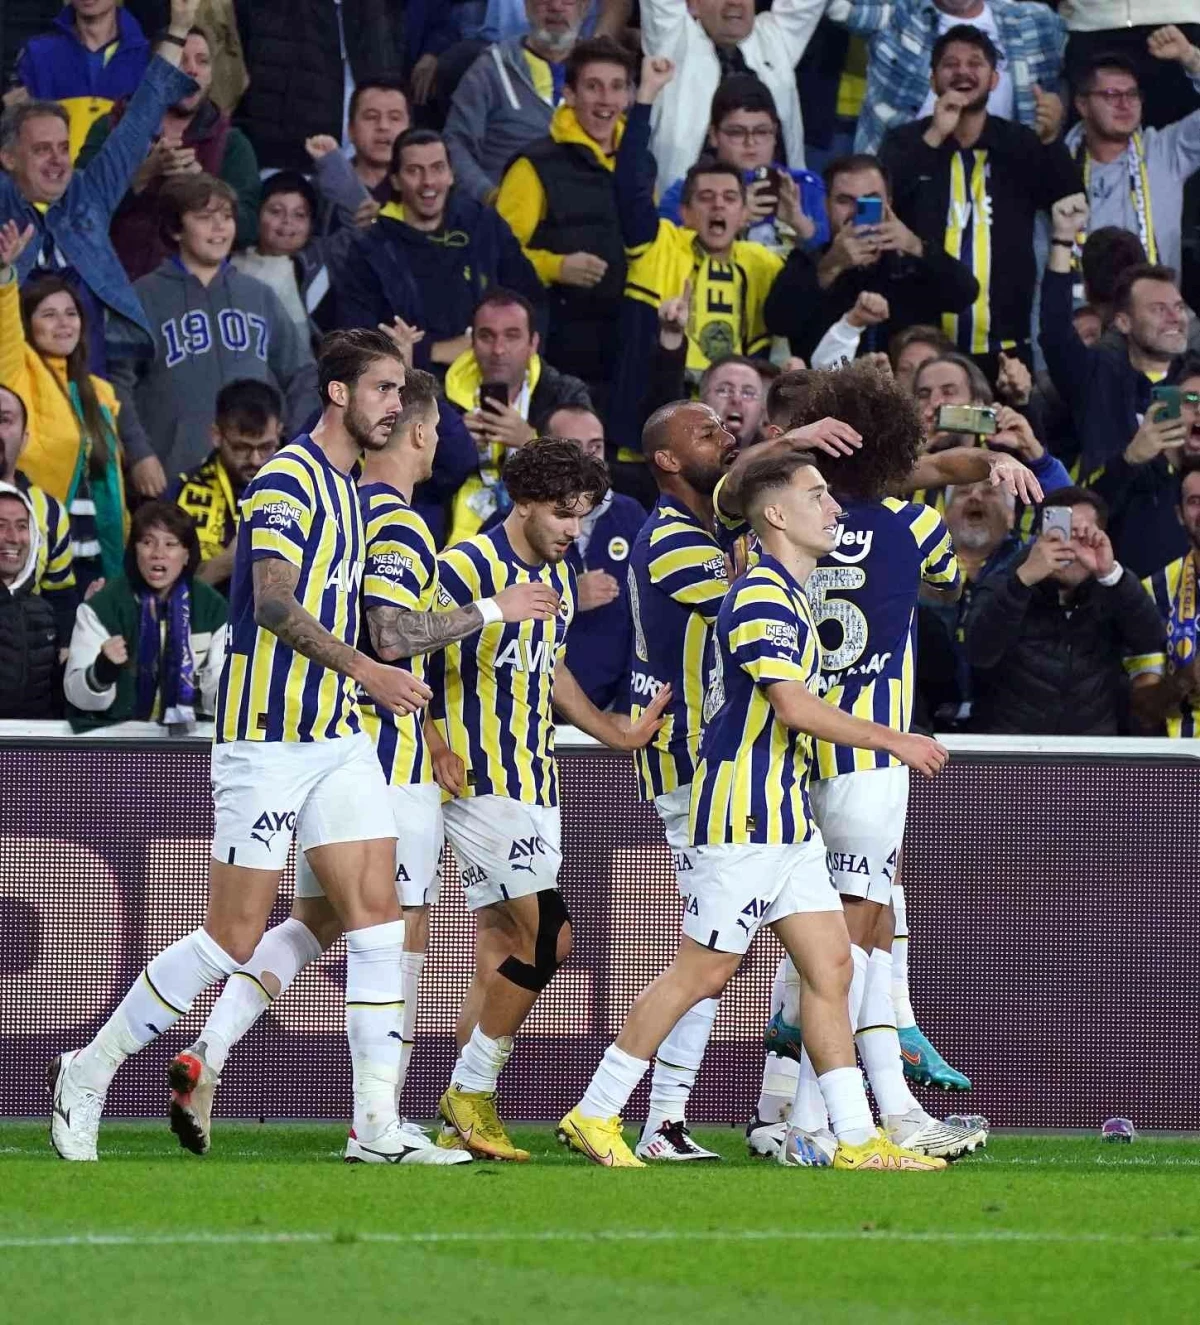 Fenerbahçe tek golle kazandı